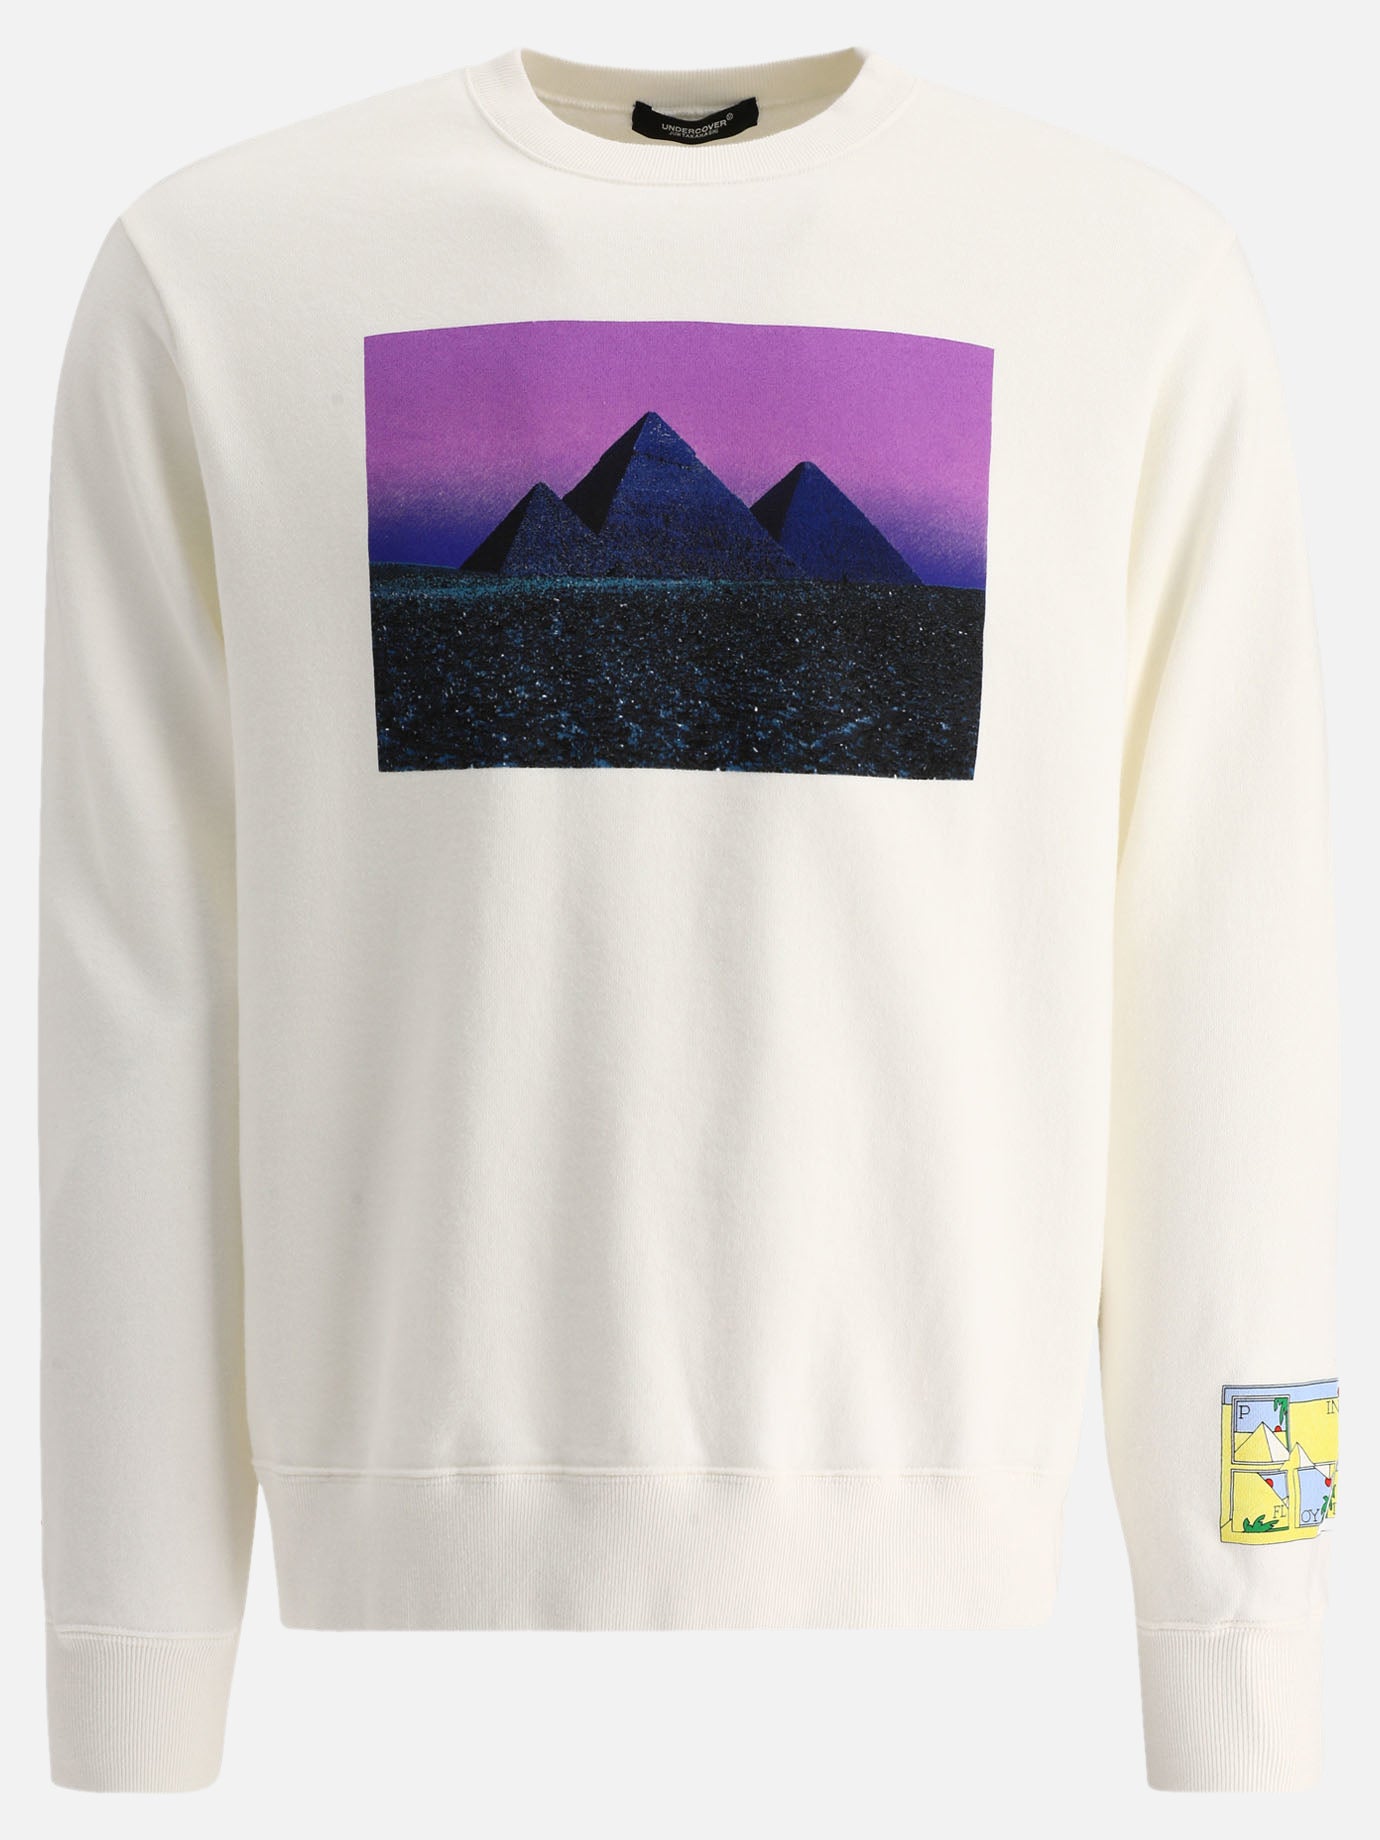 "Pink Floyd" sweatshirt